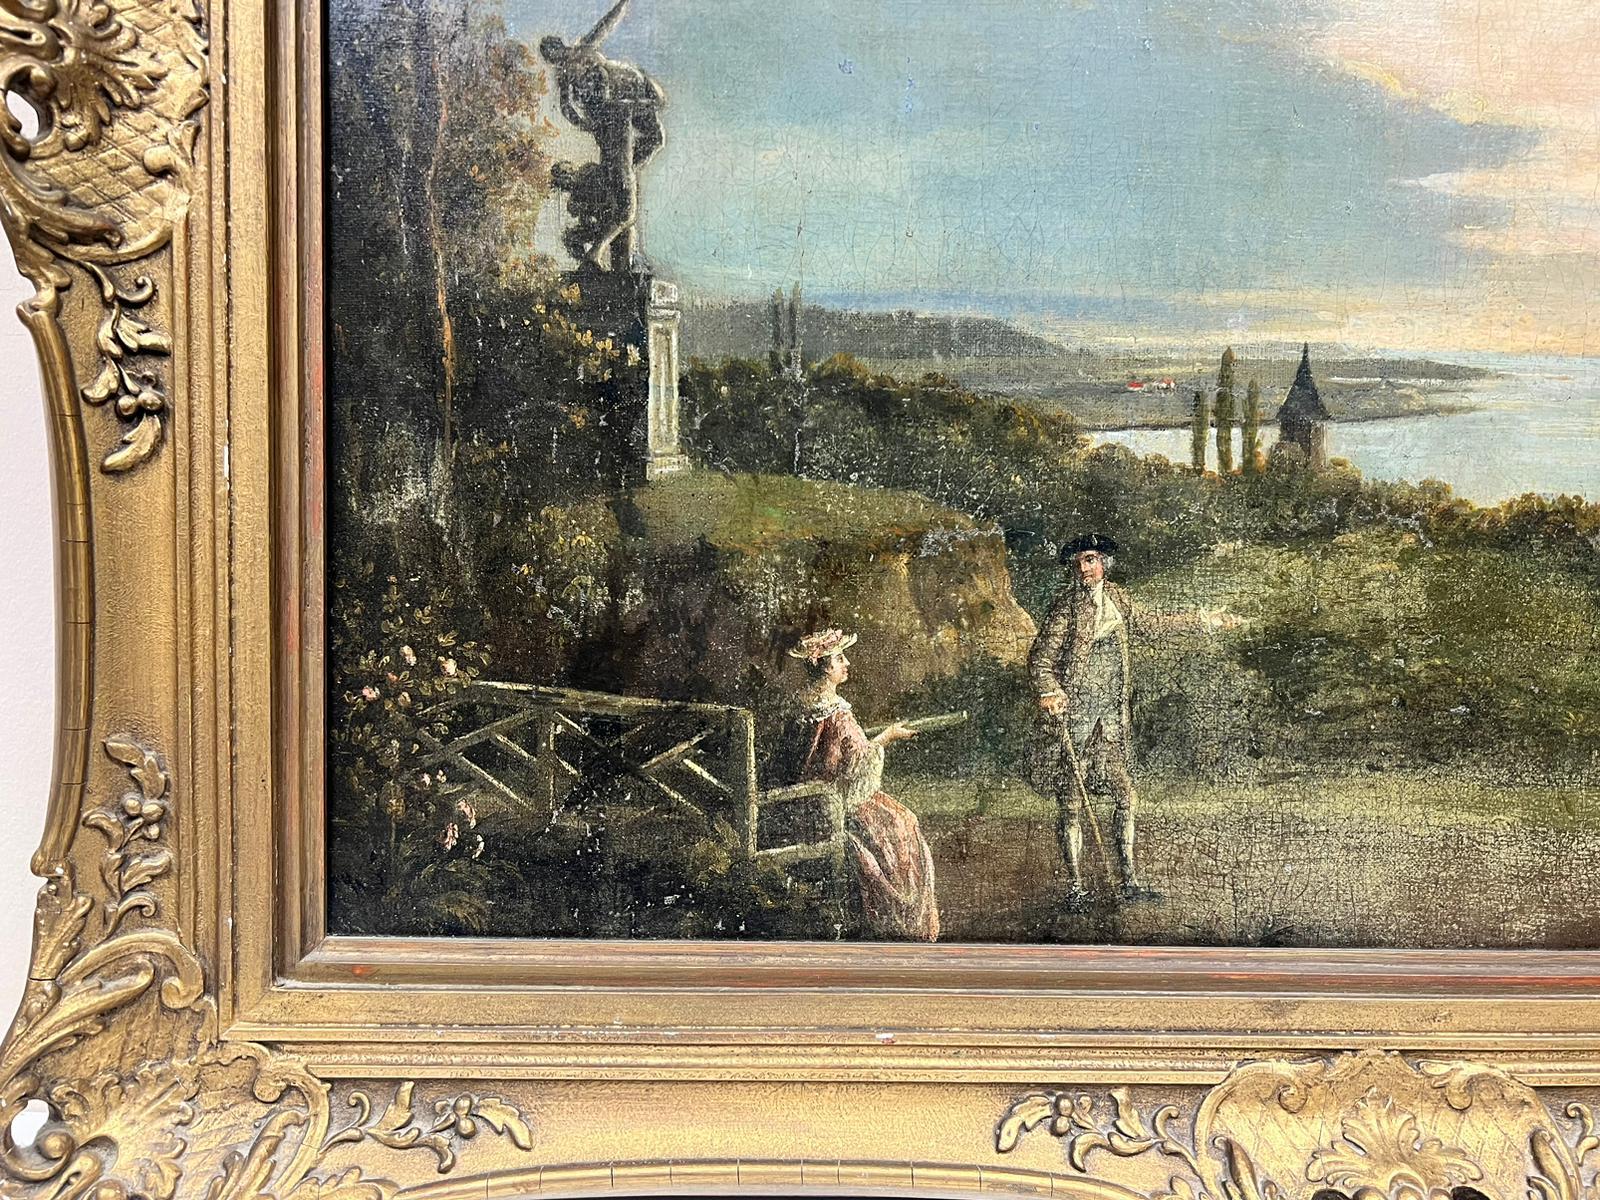 Italienischer Landschaftsgarten mit klassizistischen Ornamenten, darunter die Sabinerinnen von Giambologna und eine klassische Urne, Blick auf eine Bucht dahinter
Coplestone Warre Bampfylde (britisch 1720-1791)
Öl auf Leinwand, gerahmt
Gerahmt: 30 x